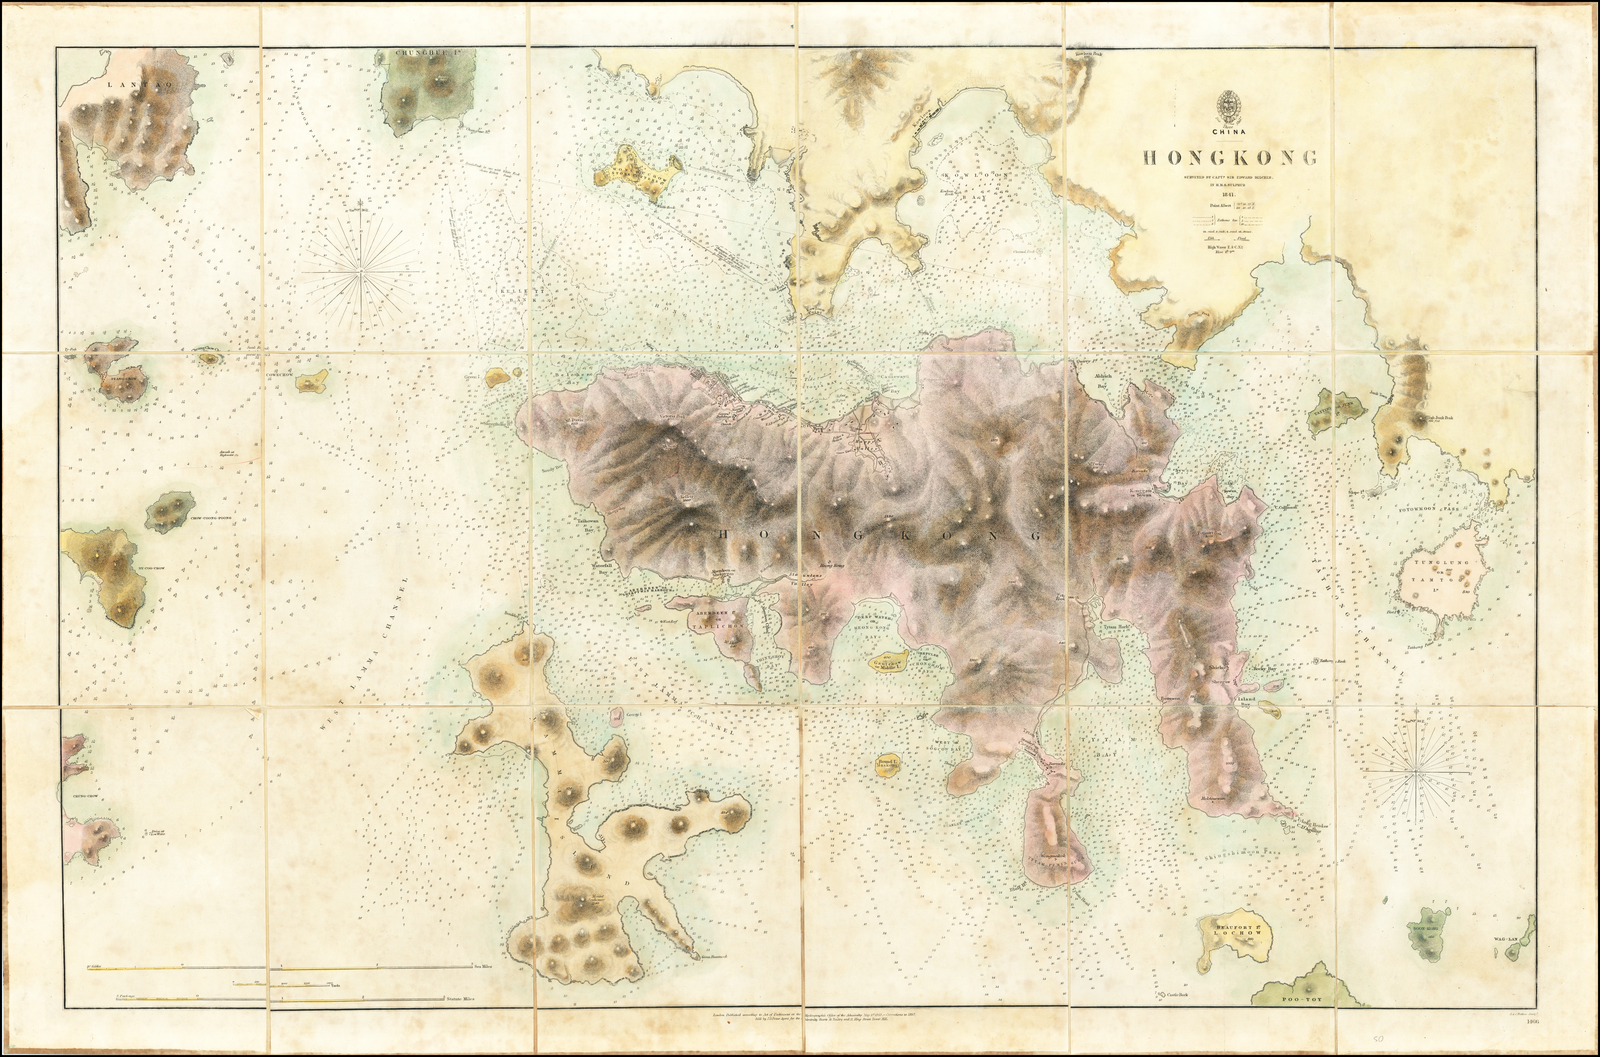 Cette carte de Hong Kong a été réalisée après la prise de l’île par les Britanniques, due en grande partie à l’intervention de Belcher et de ses hommes.